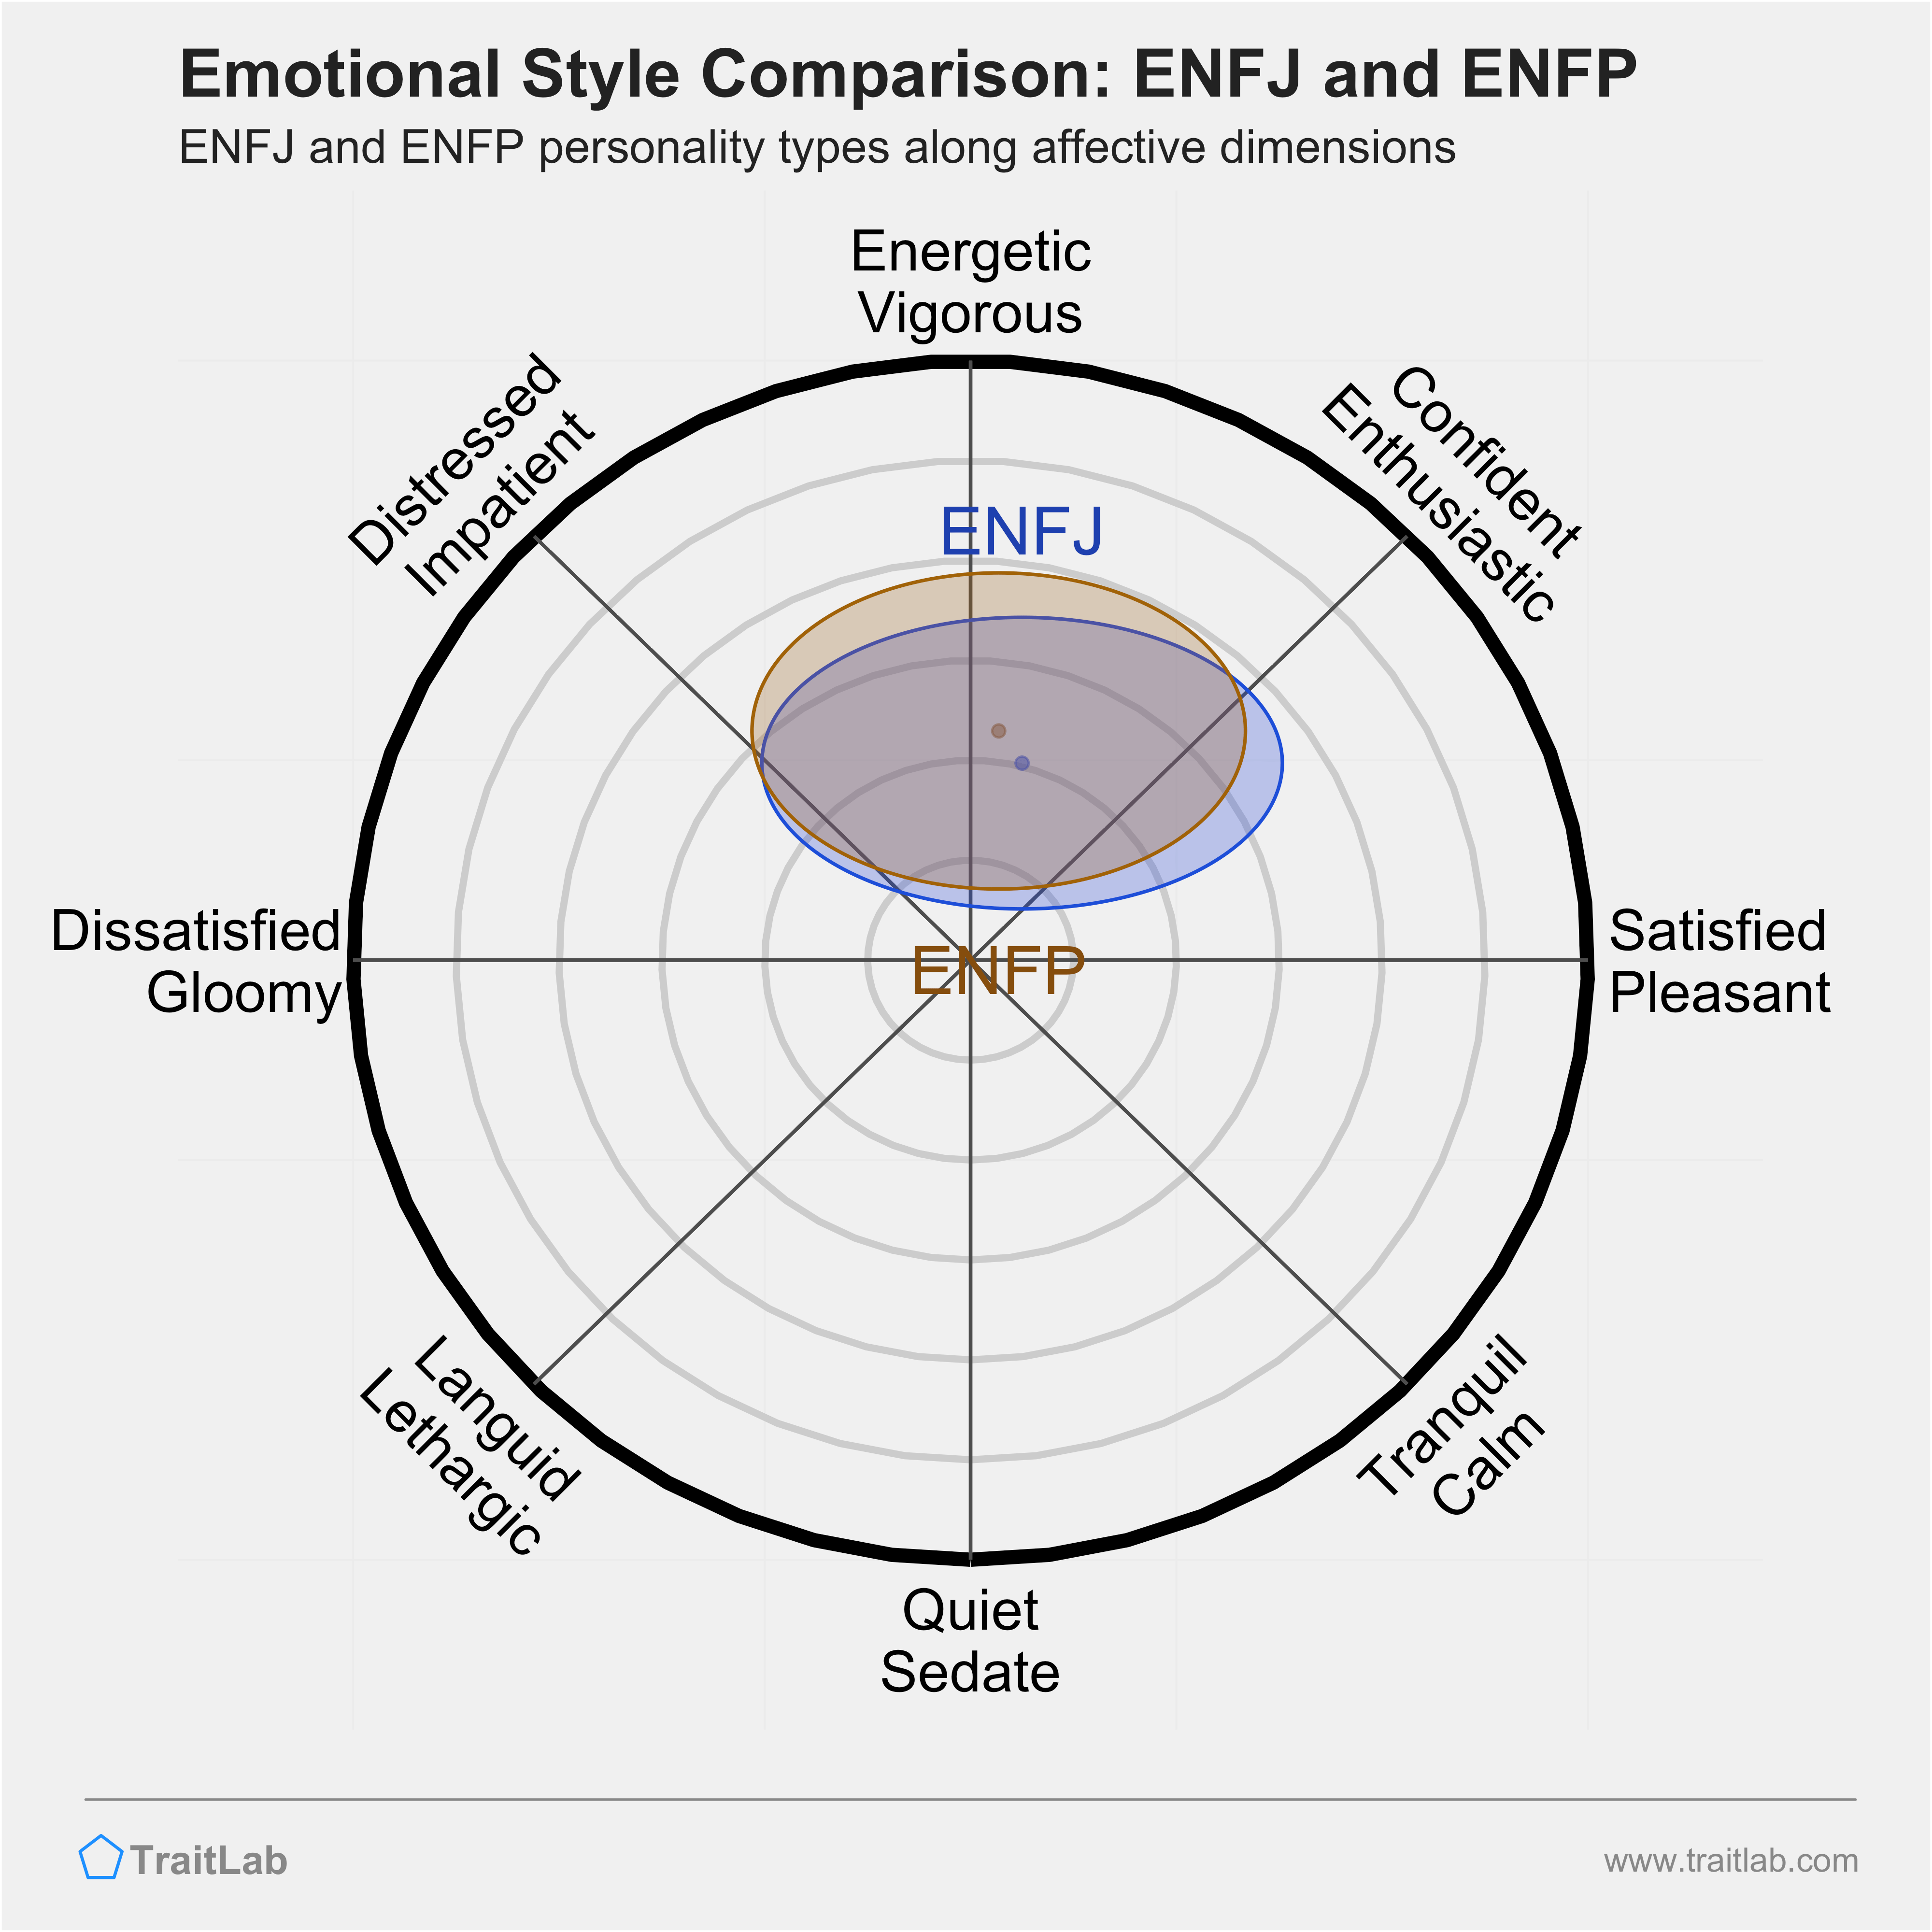 ENFJ and ENFP comparison across emotional (affective) dimensions